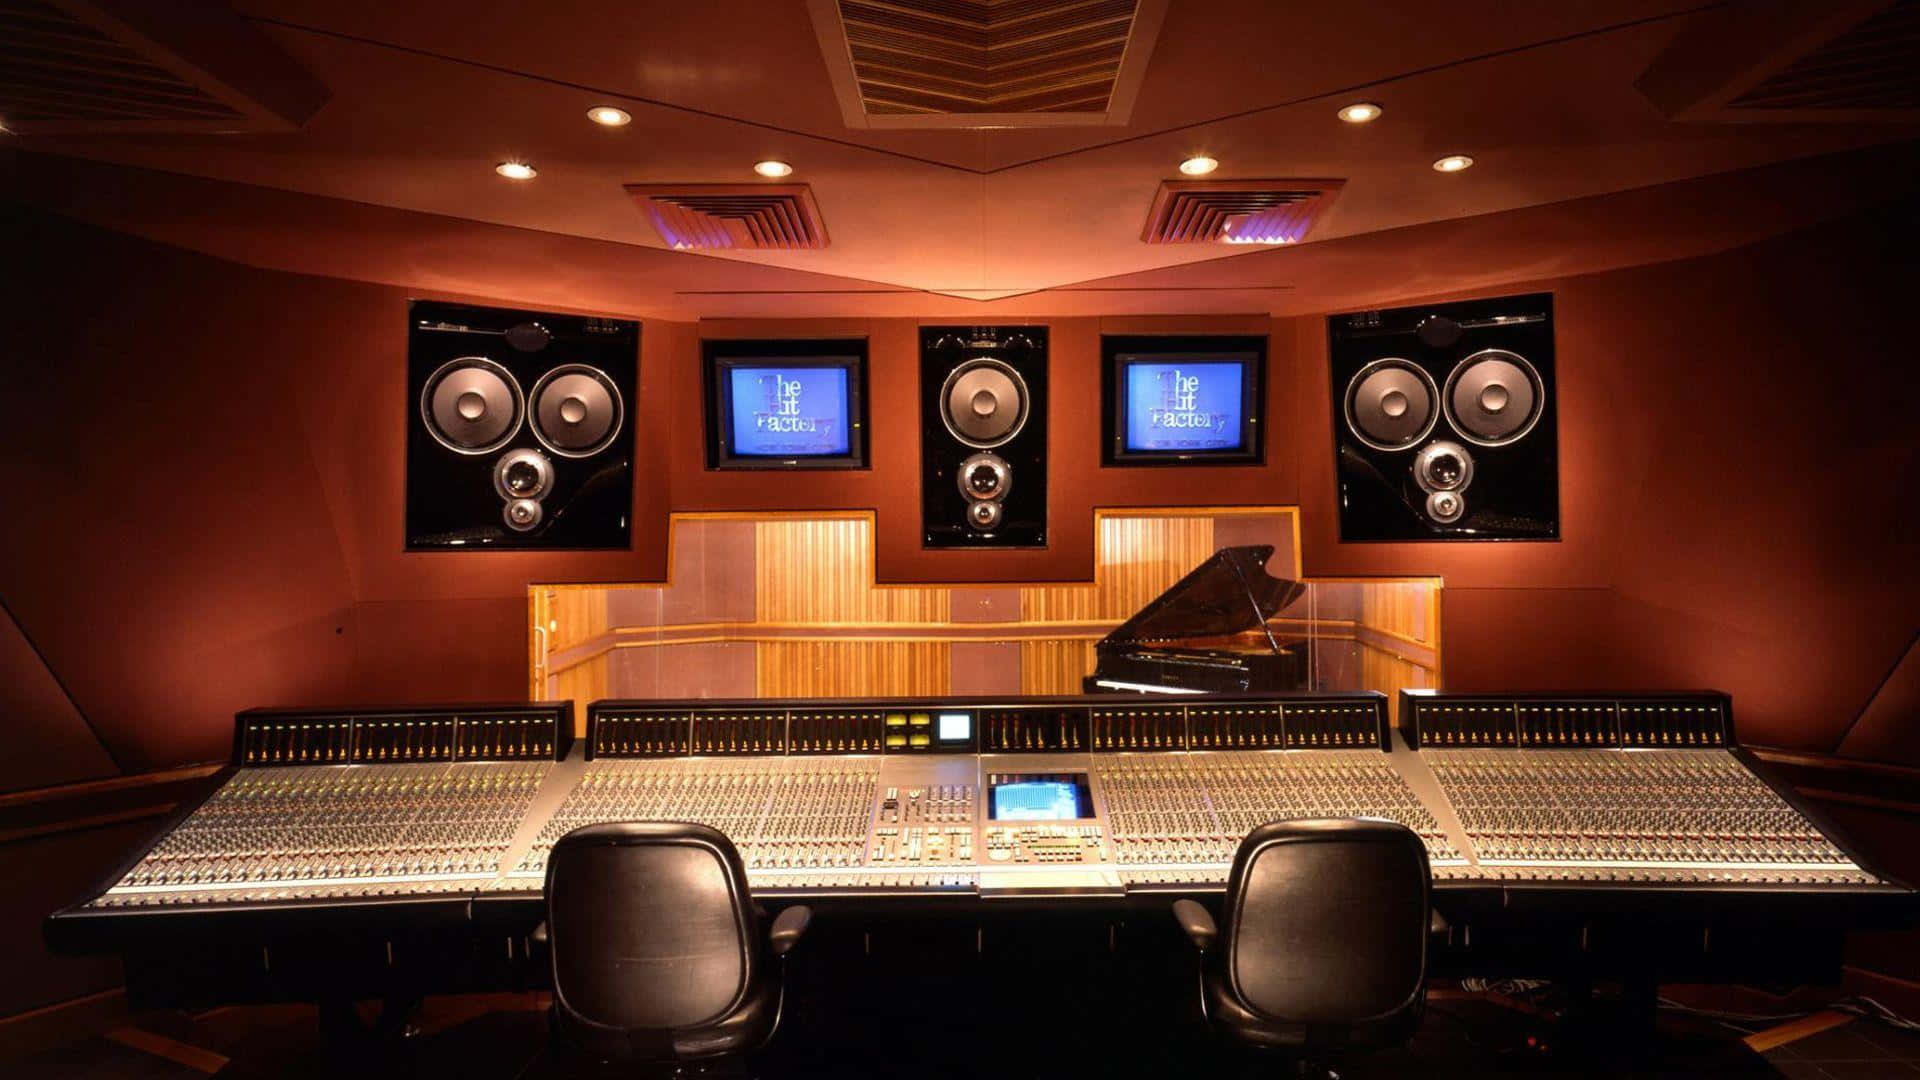 Hãy cùng chiêm ngưỡng hình nền Studio Music đẹp lung linh với khung cảnh âm nhạc cực kỳ sống động.